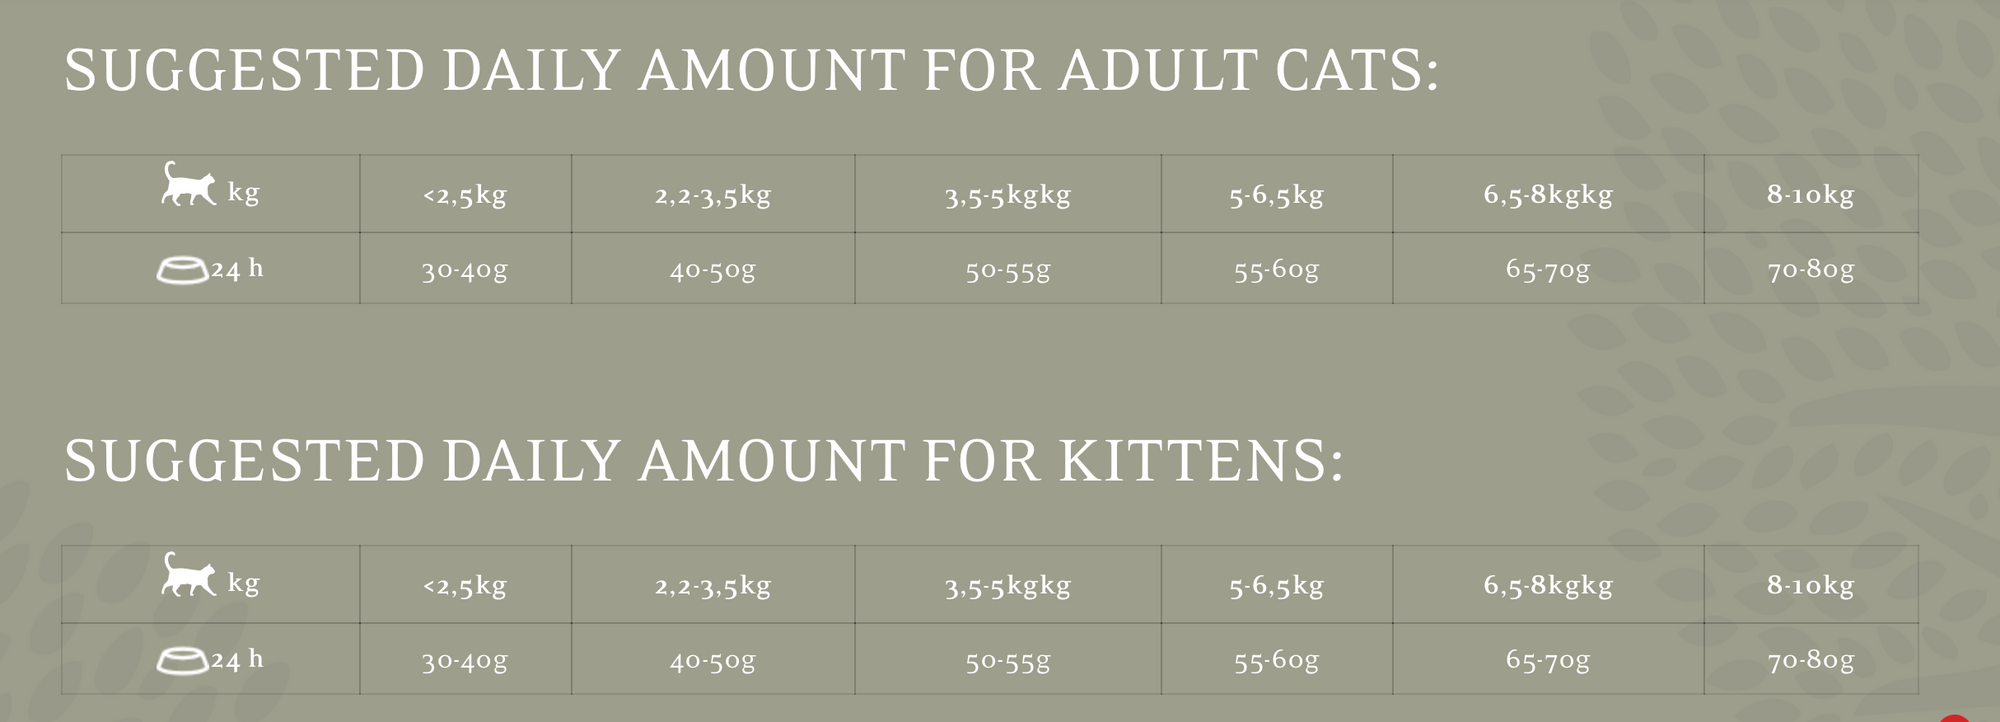 ESSENTIAL JAGUAR bezgraudu super premium sausā barība kaķiem un kaēniem - 95 % галл.